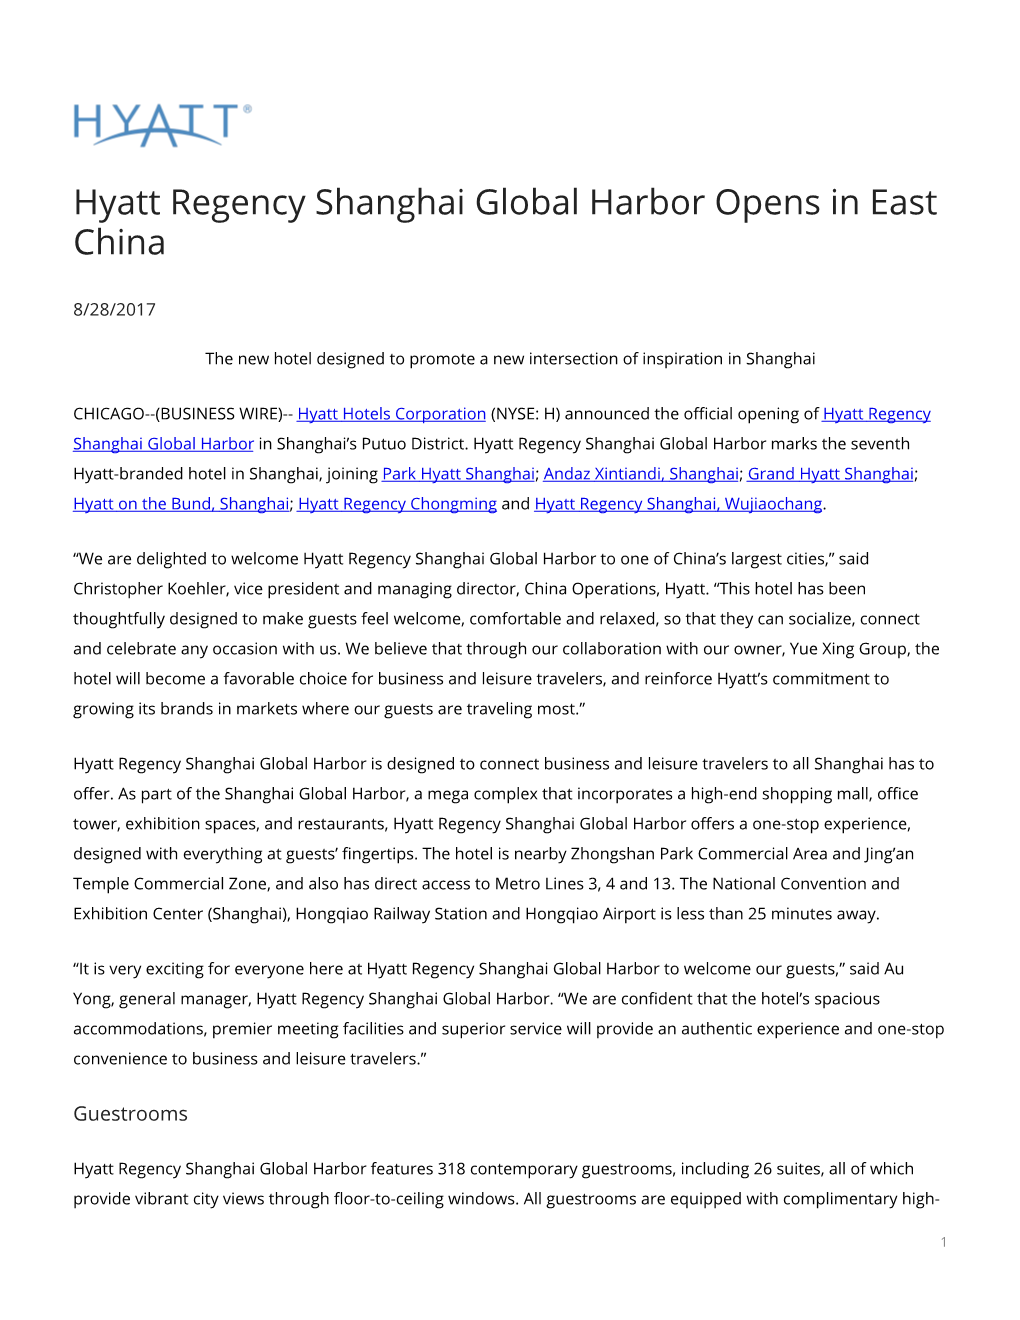 Hyatt Regency Shanghai Global Harbor Opens in East China